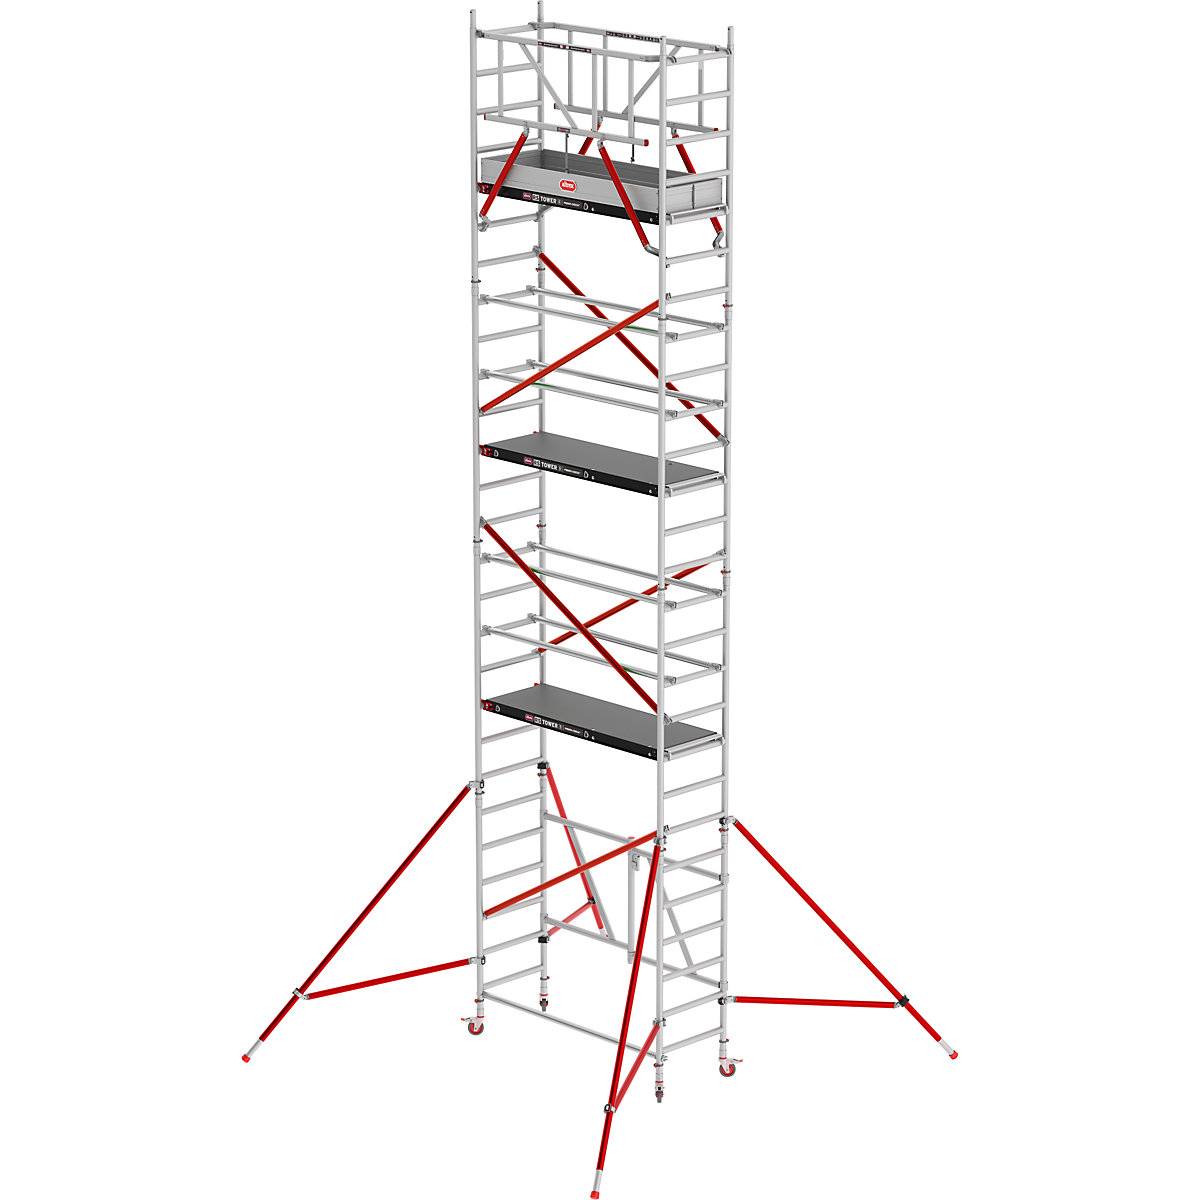 Altrex Zimmergerüst RS TOWER 54, mit Fiber-Deck®-Plattform, Arbeitshöhe 8,80 m